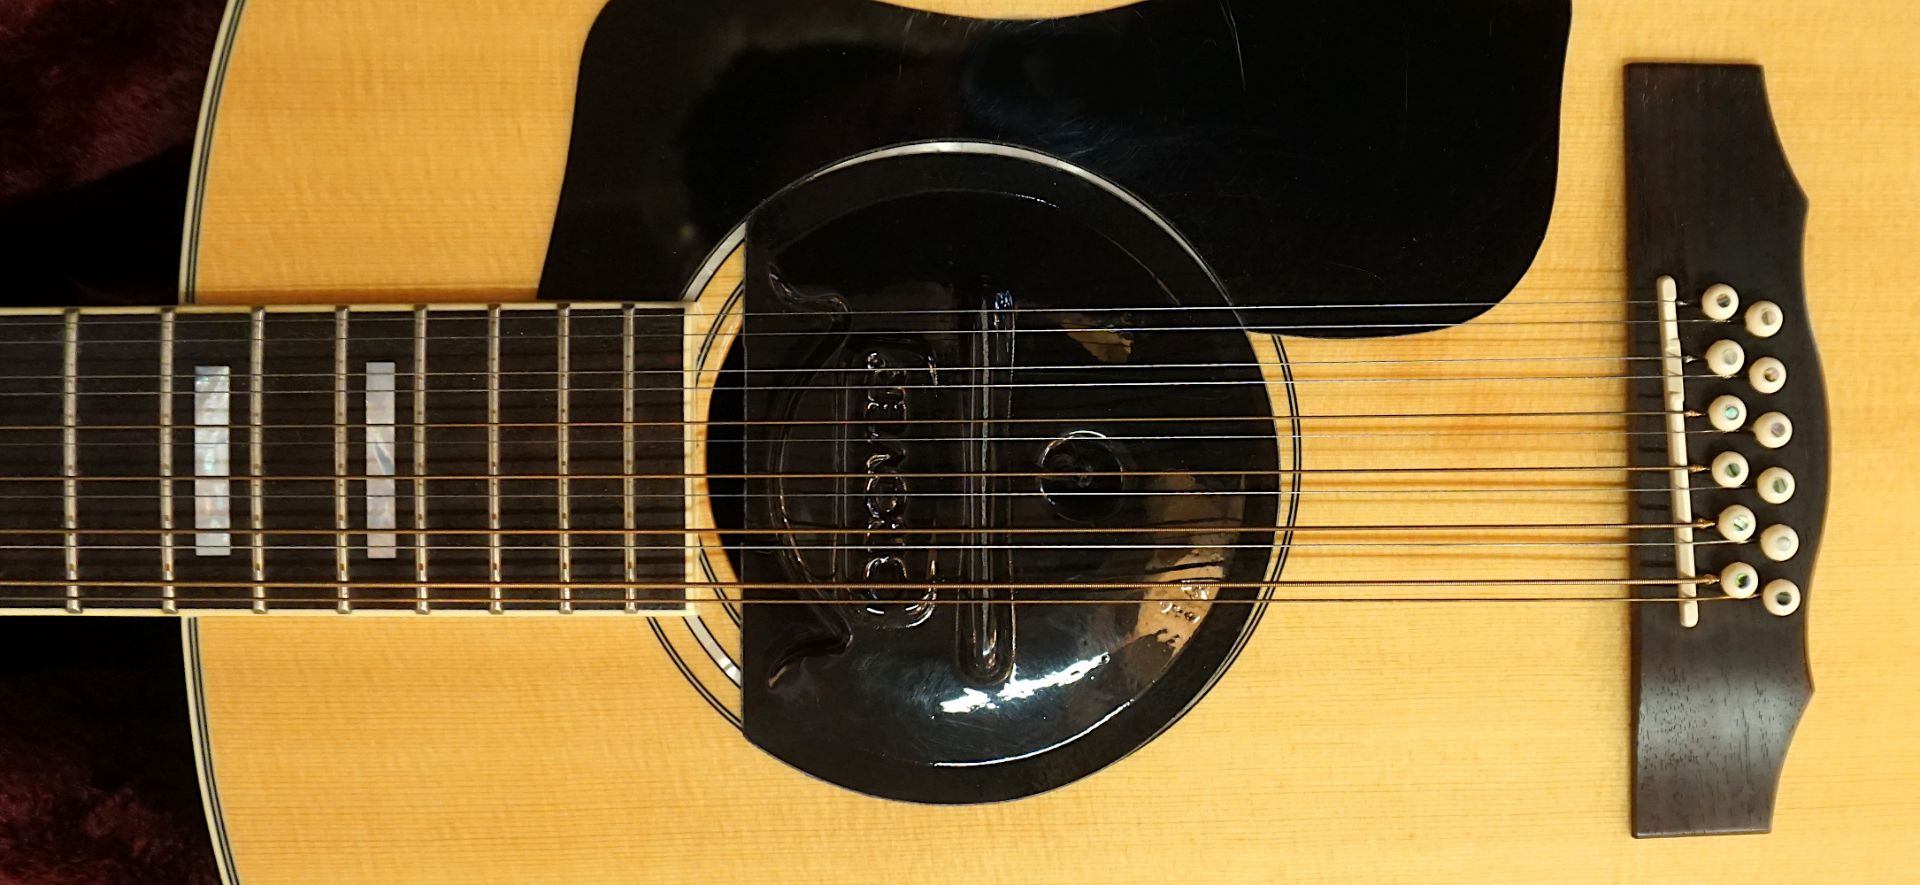 1 Akustik-Gitarre GUILD "F-1512NAT", China Seriennummer: GAD-54054, schwarz/braun, mit - Bild 3 aus 4